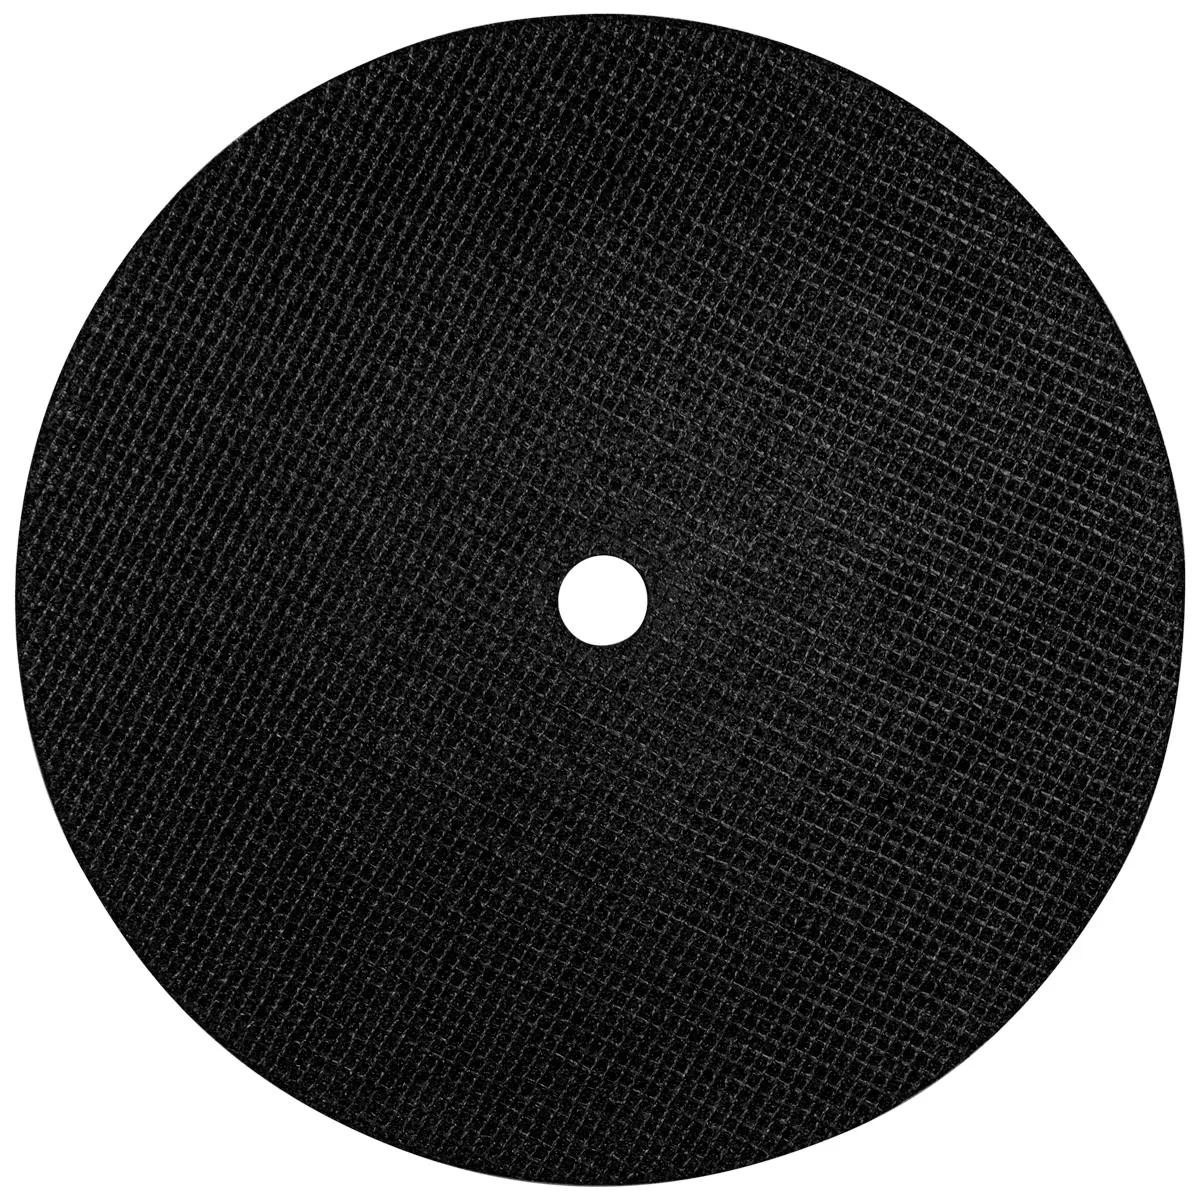 Cutting disc for metal ø350x3.5mm 